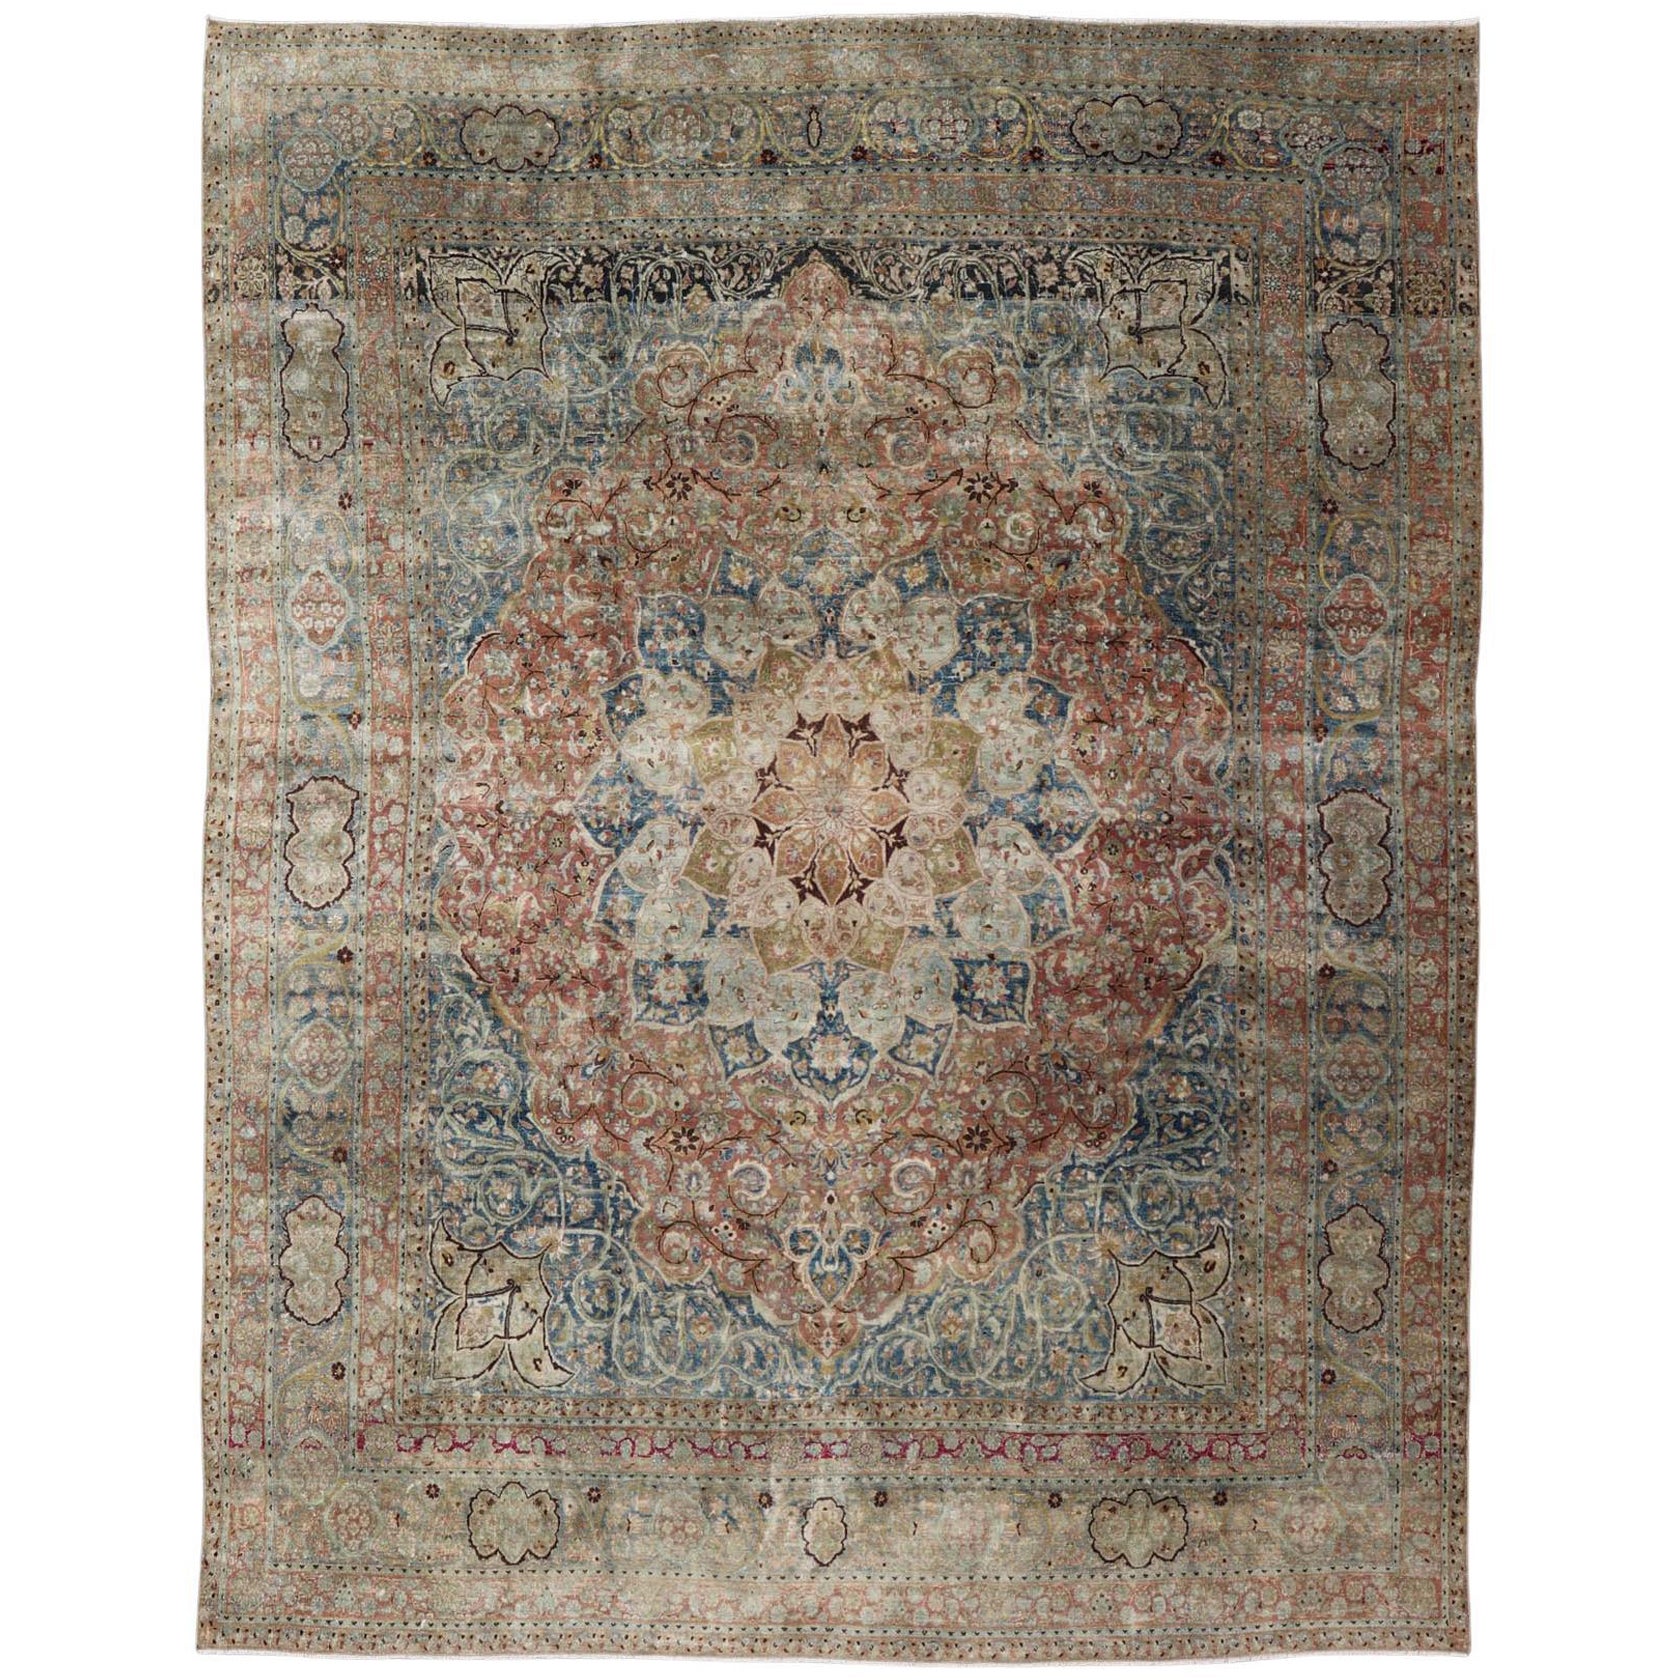 Großer großer antiker persischer Mashad-Teppich mit buntem Blumen- und Medaillonmuster